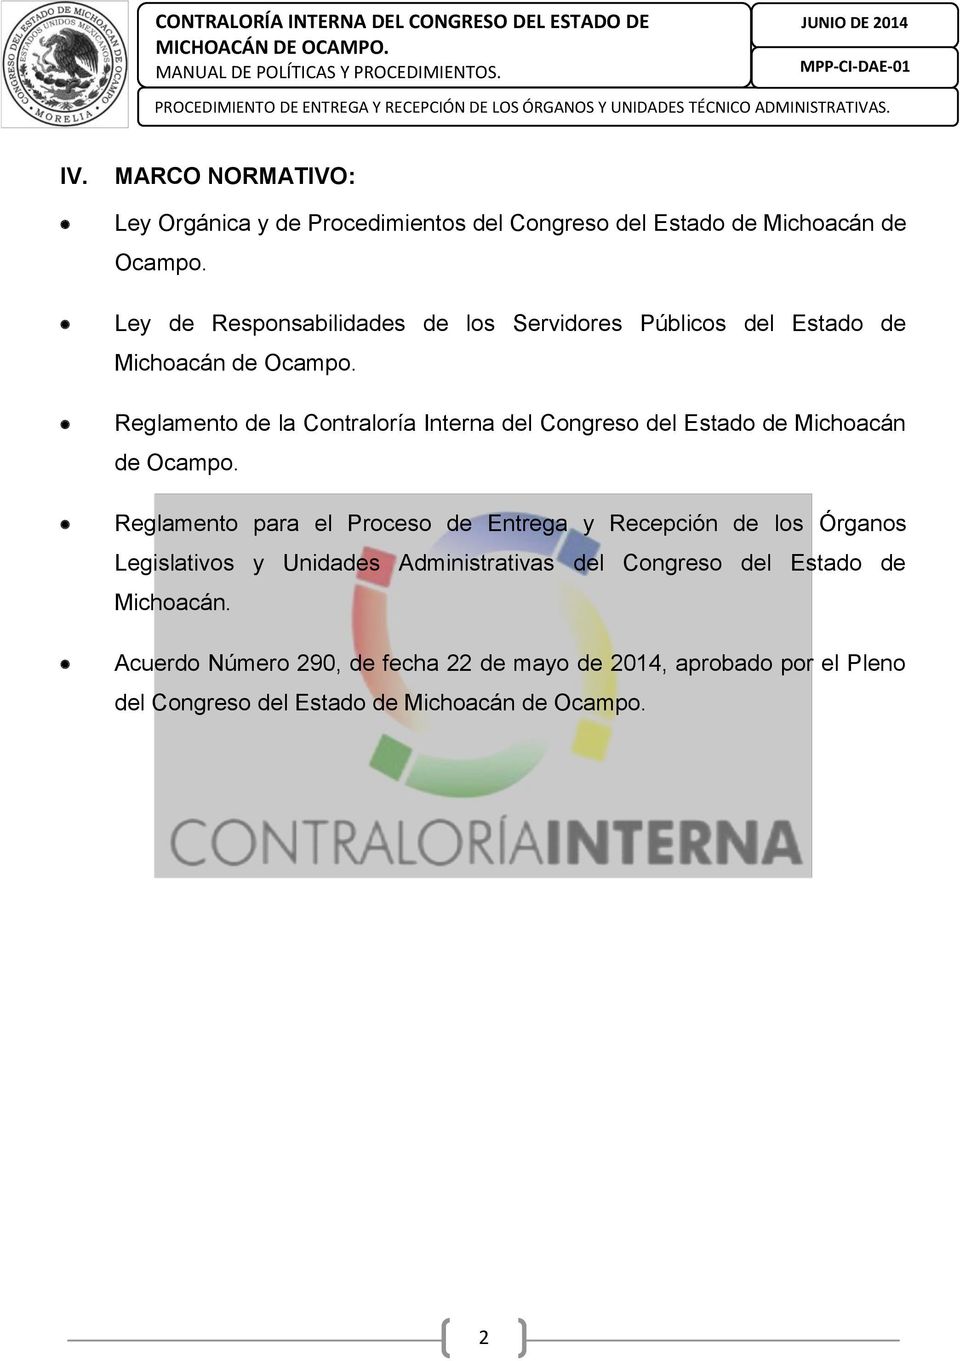 MARCO NORMATIVO: Ley Orgánica y de Procedimientos del Congreso del Estado de Michoacán de Ocampo. Ley de Responsabilidades de los Servidores Públicos del Estado de Michoacán de Ocampo.